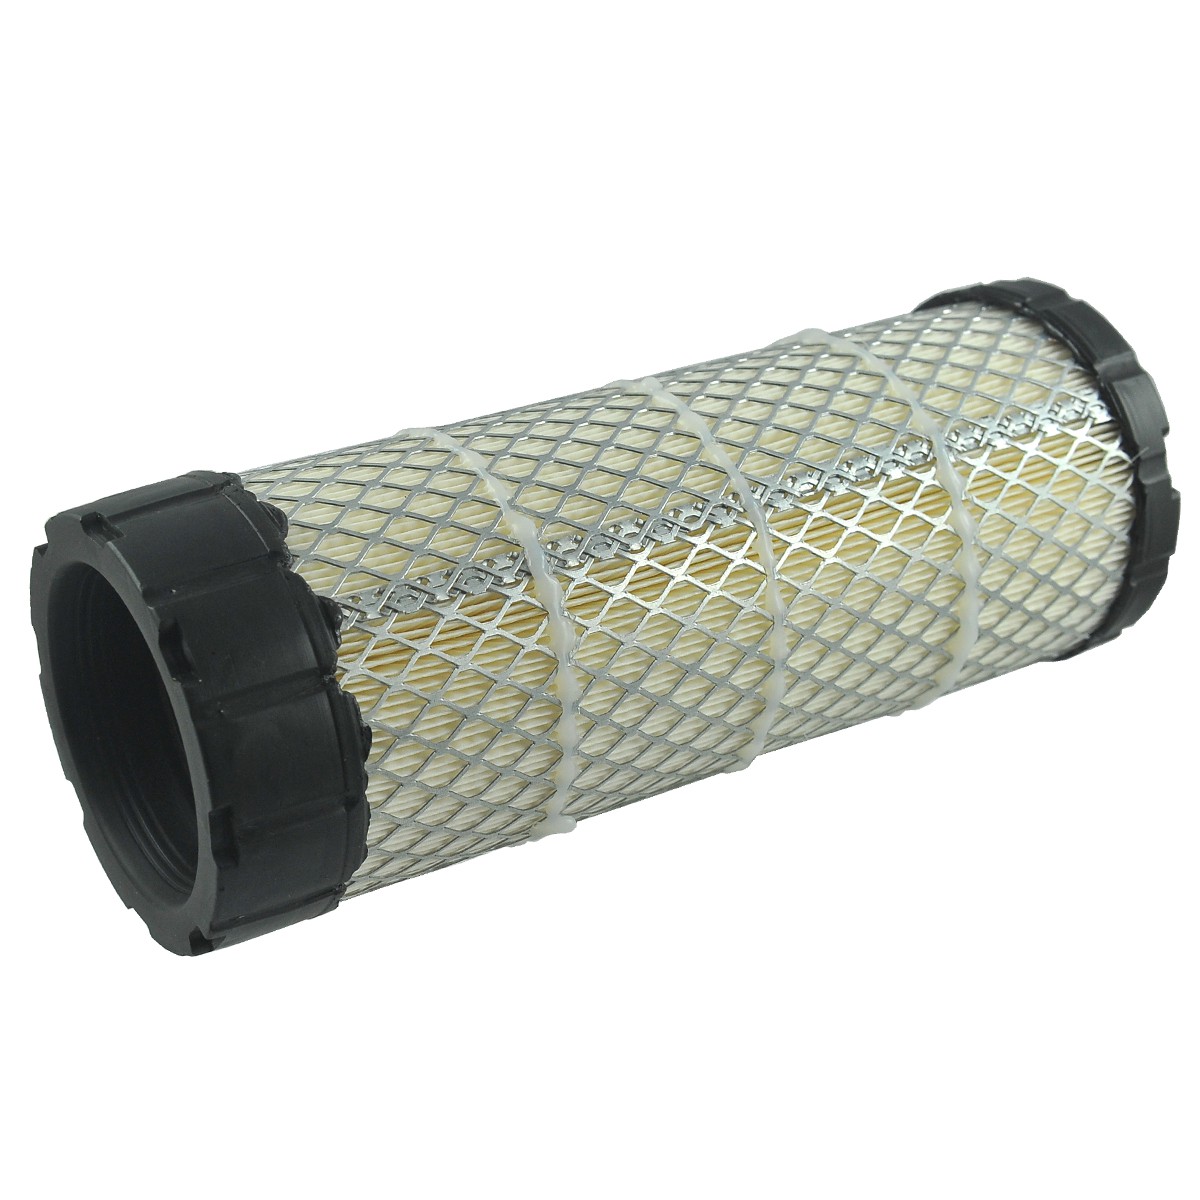 Air filter / 105 x 275 mm / Kubota L3008/L3301/L3608/L3901 / SA16615 / TC422-93230 / 6-01-102-05